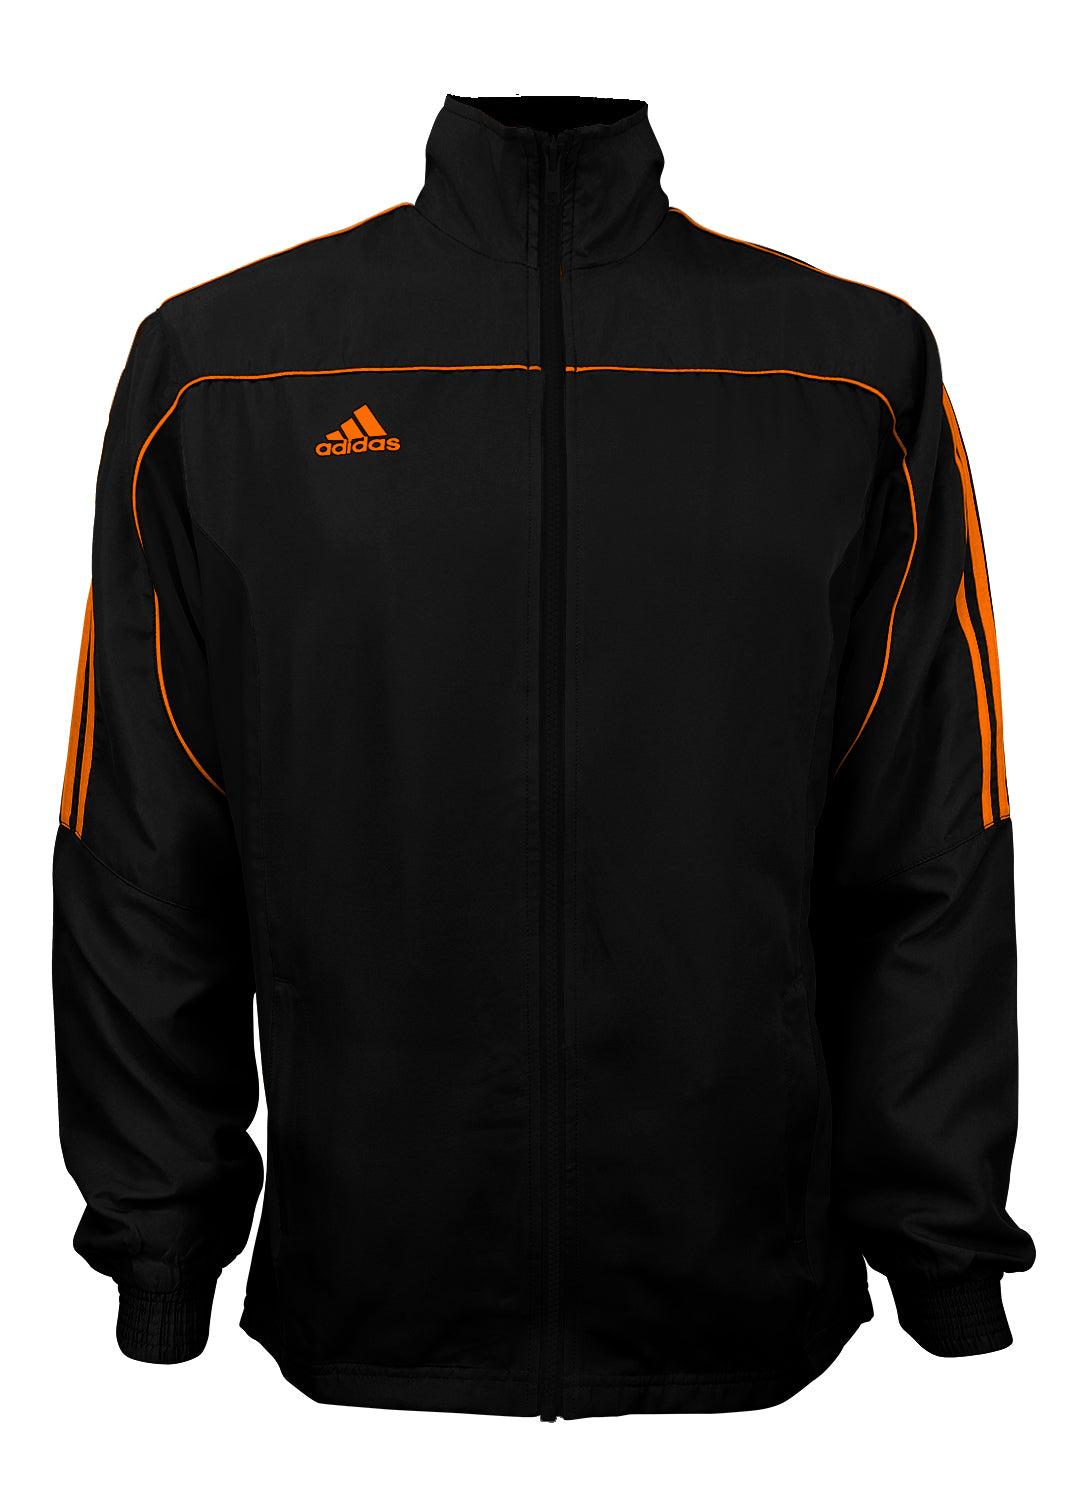 adidas jacket orange stripes